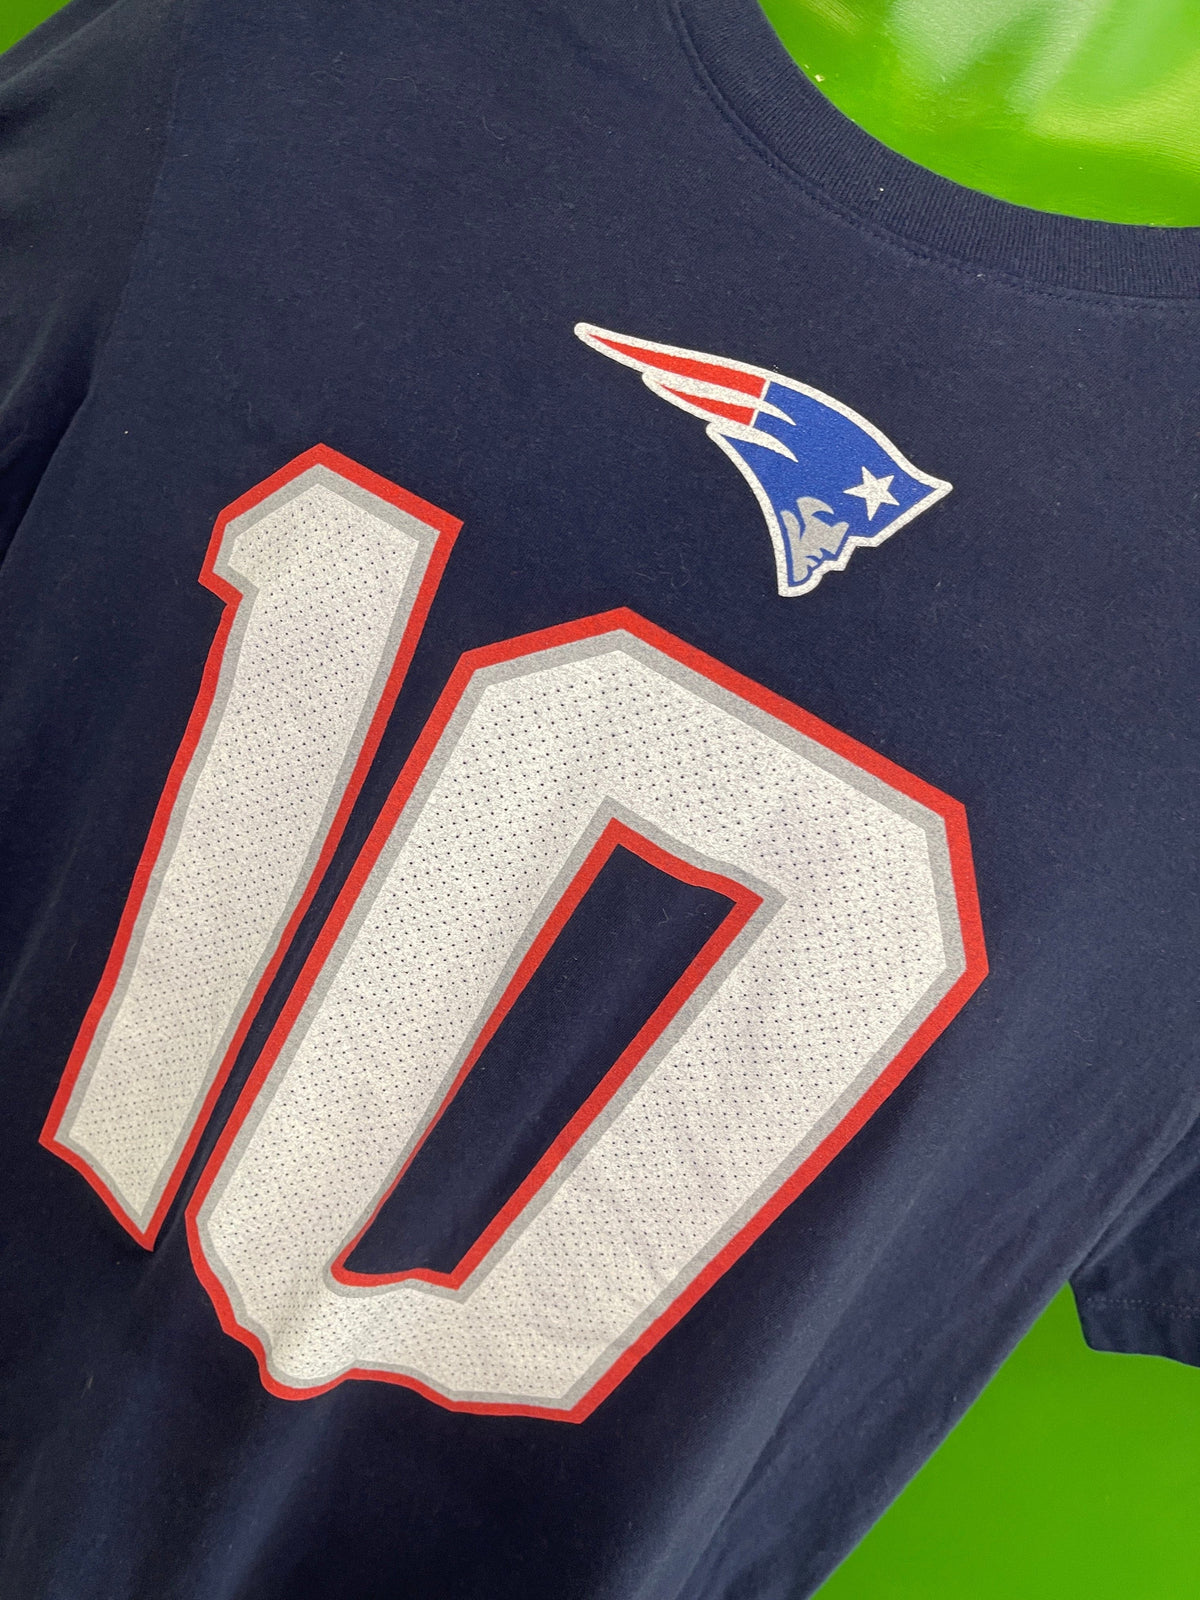 NFL New England Patriots Mac Jones #10 T-Shirt Men's Large